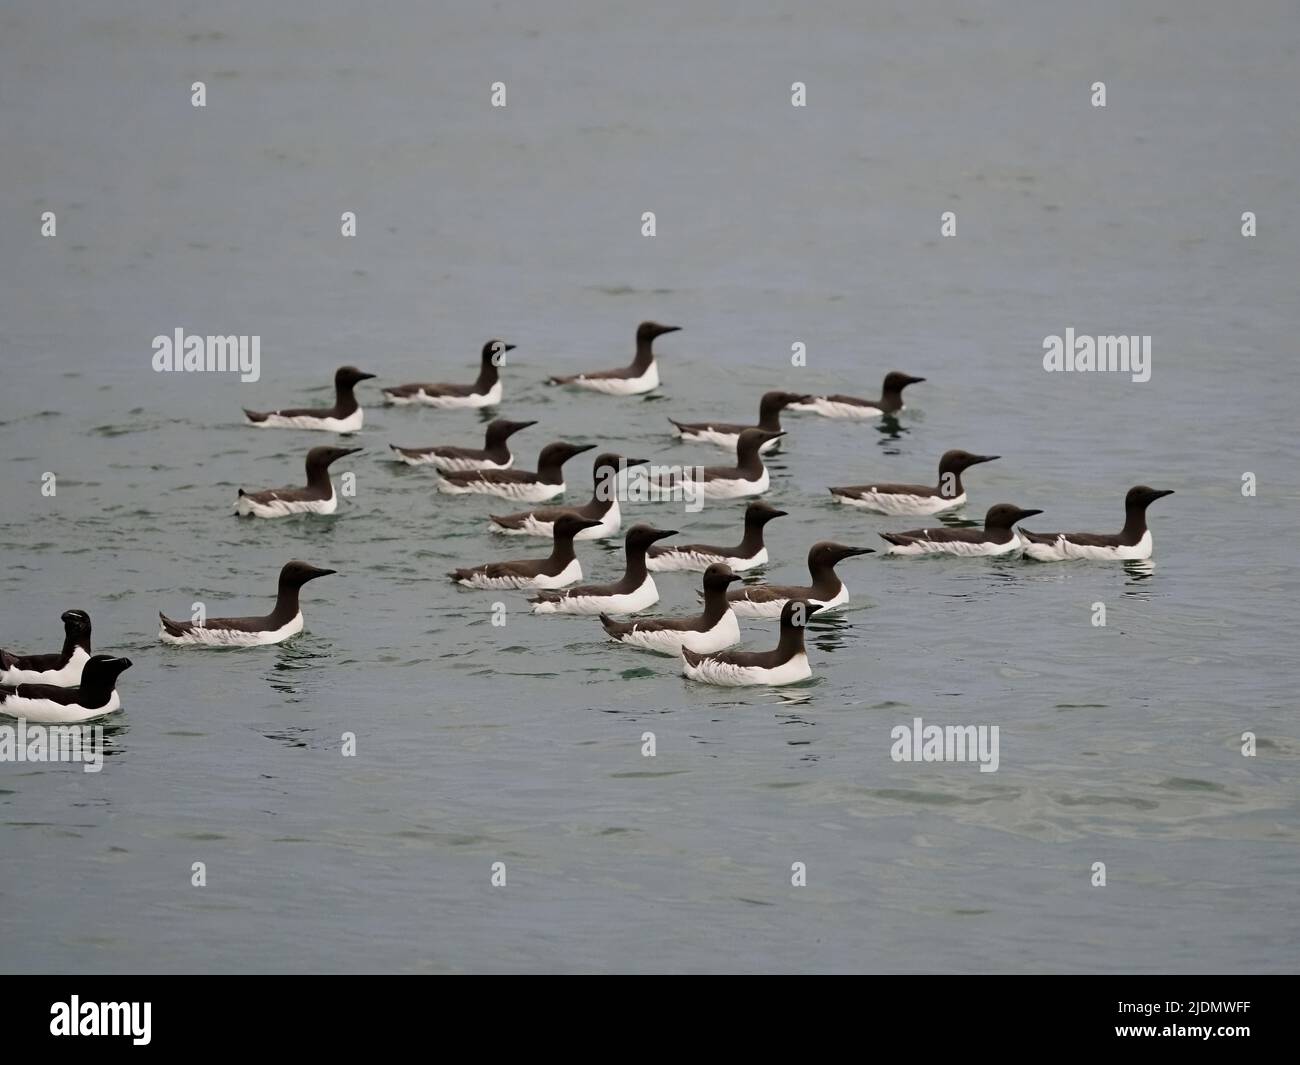 Guillemot, Uria aalge, gruppo di uccelli in mare, Yorkshire, giugno 2022 Foto Stock